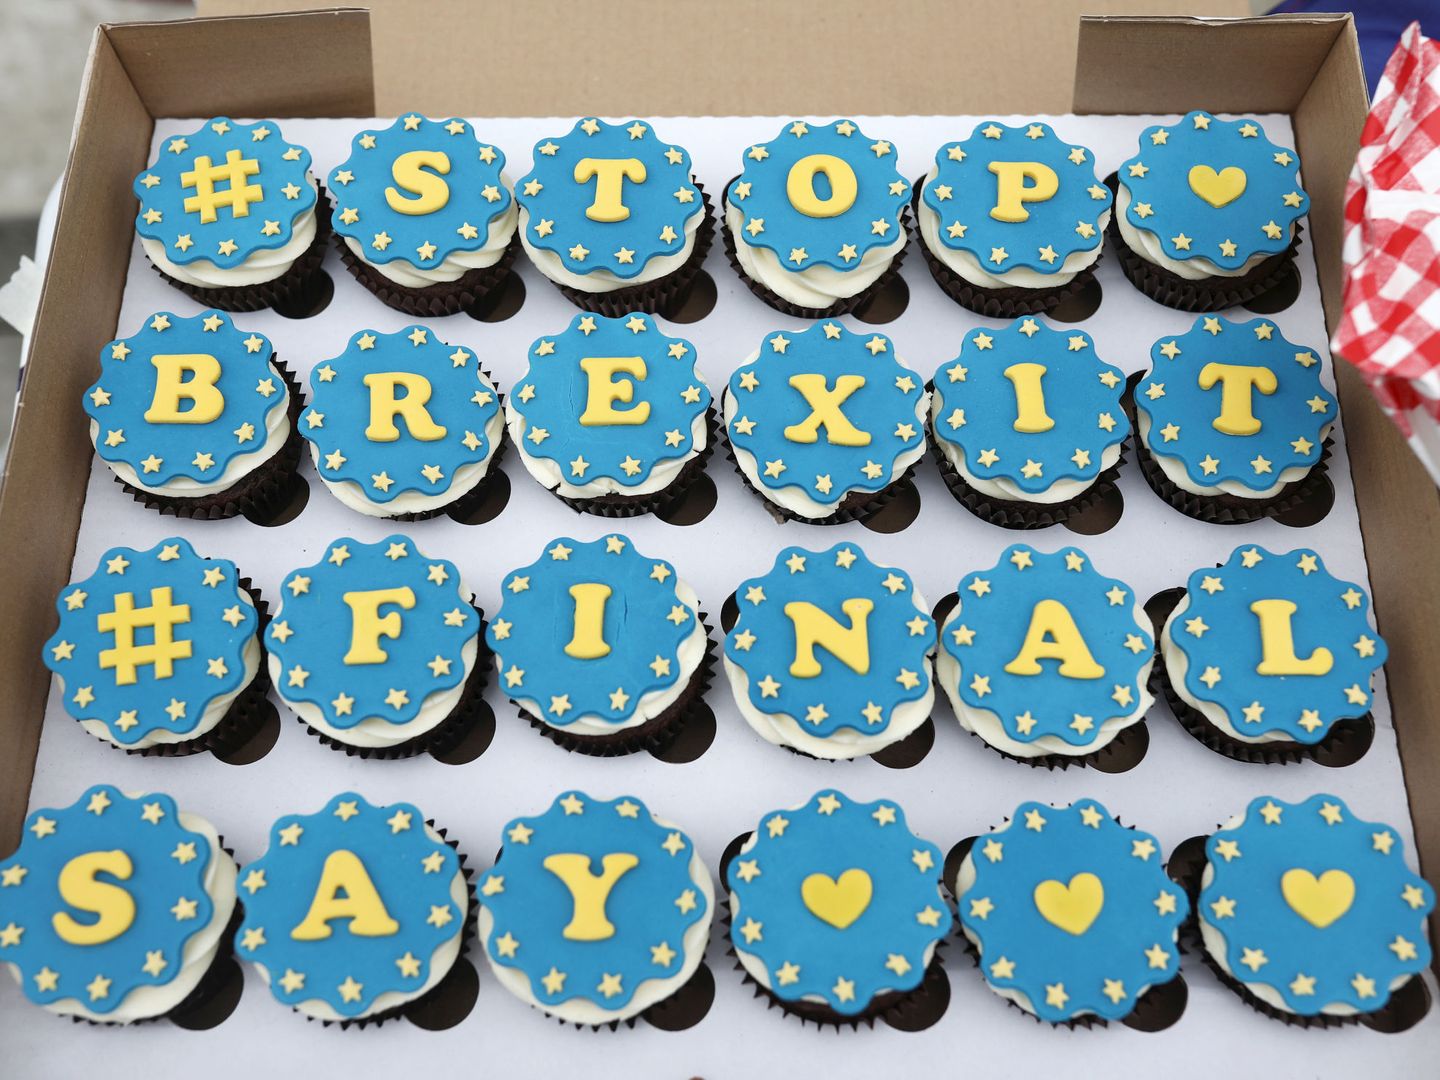 Pastelillos anti-Brexit durante una protesta en Londres, el 16 de abril de 2018. (Reuters)